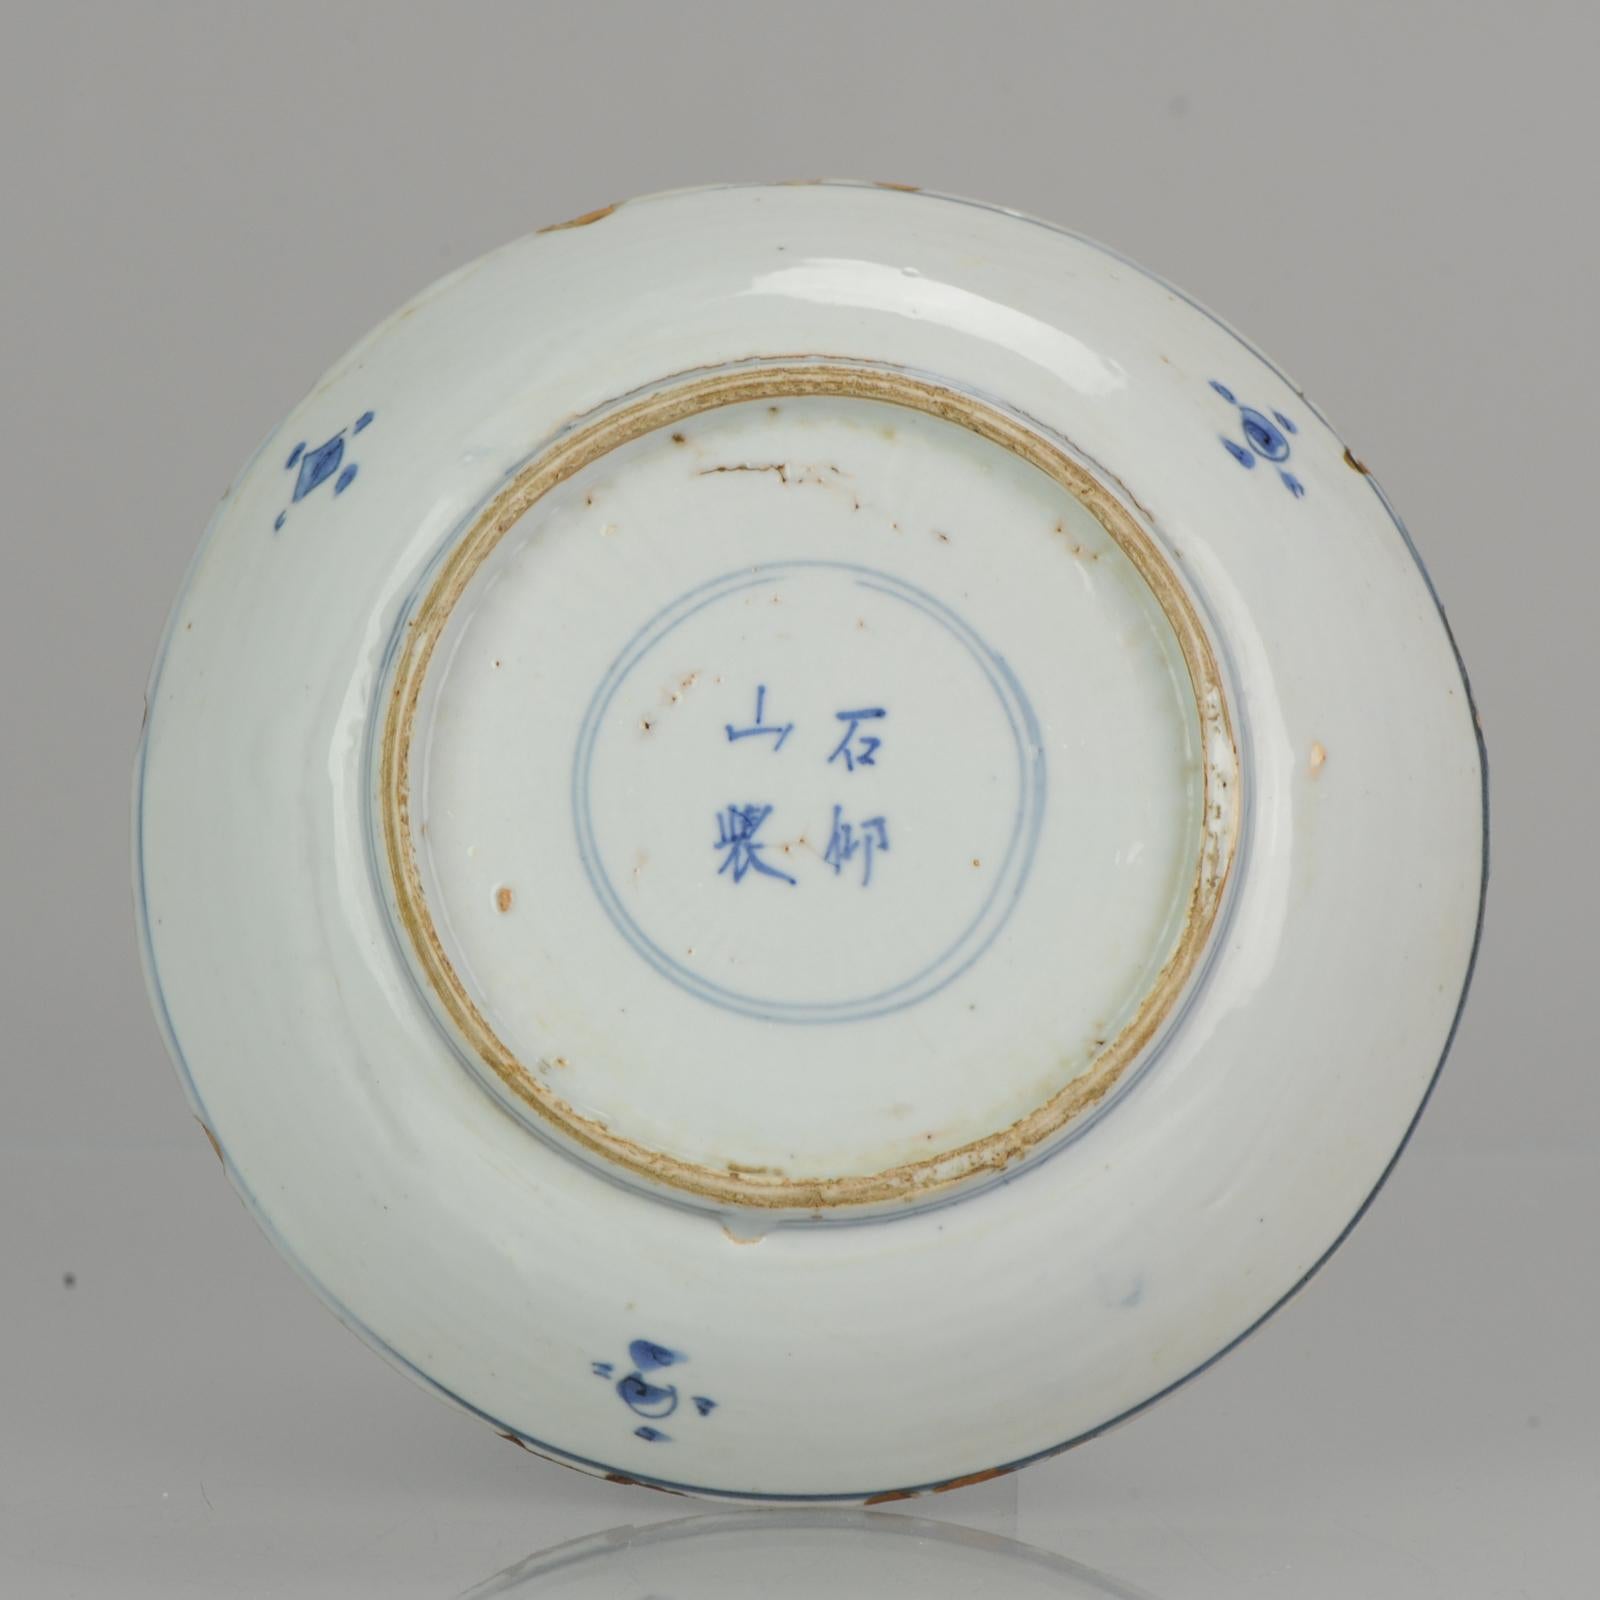 Ravissante et rare assiette en porcelaine chinoise du début du 17e siècle.

Scène centrale représentant le célèbre Shou Lao, dieu de la longévité, volant sur une grue parmi les nuages.
Devant lui se trouvent les 8 immortels avec leurs attributs